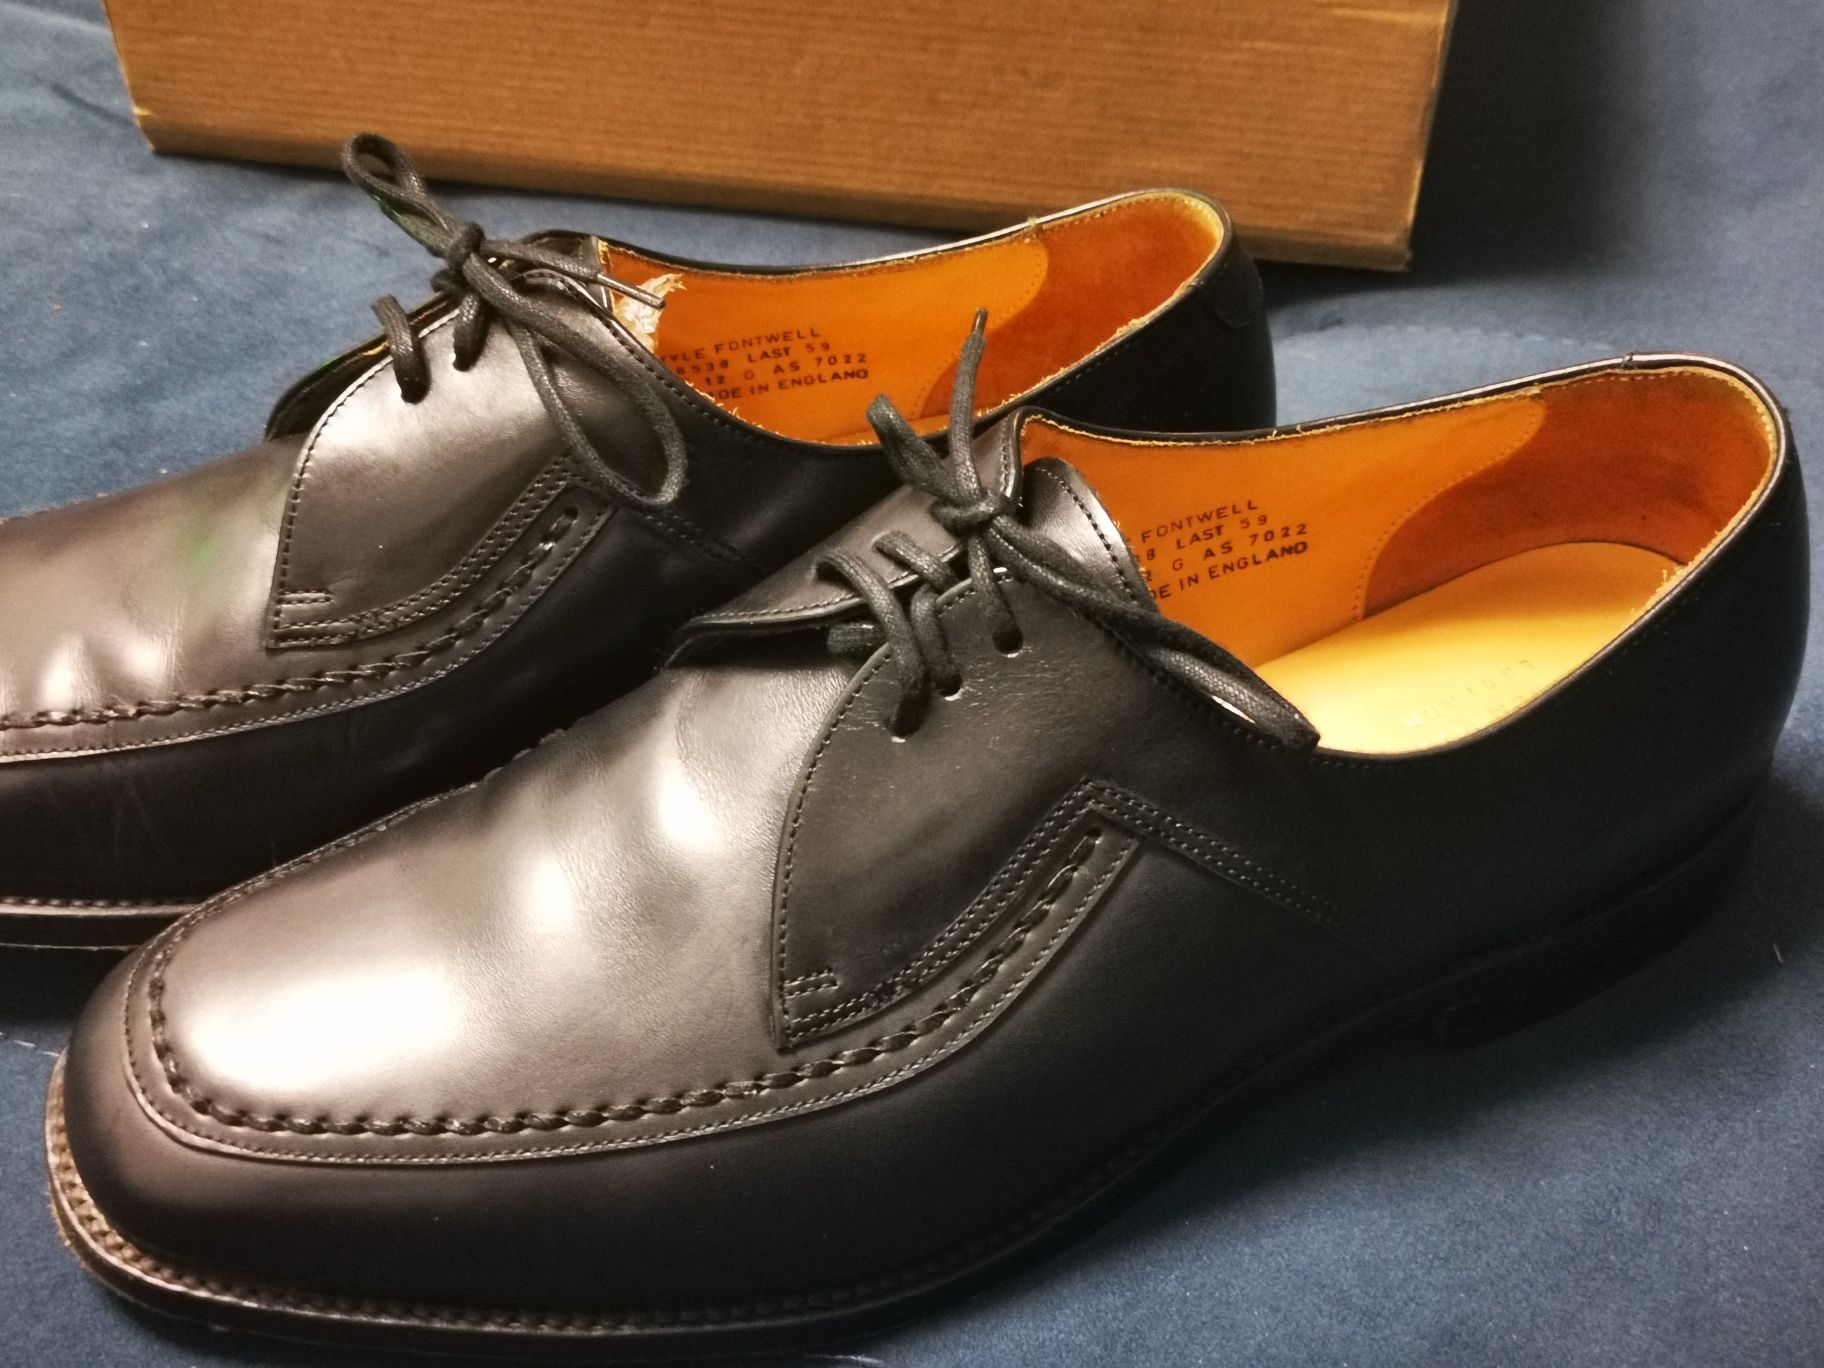 Czarne skórzane buty wizytowe LOAKE FONTWELL 12G 46 47 31cm okazja!